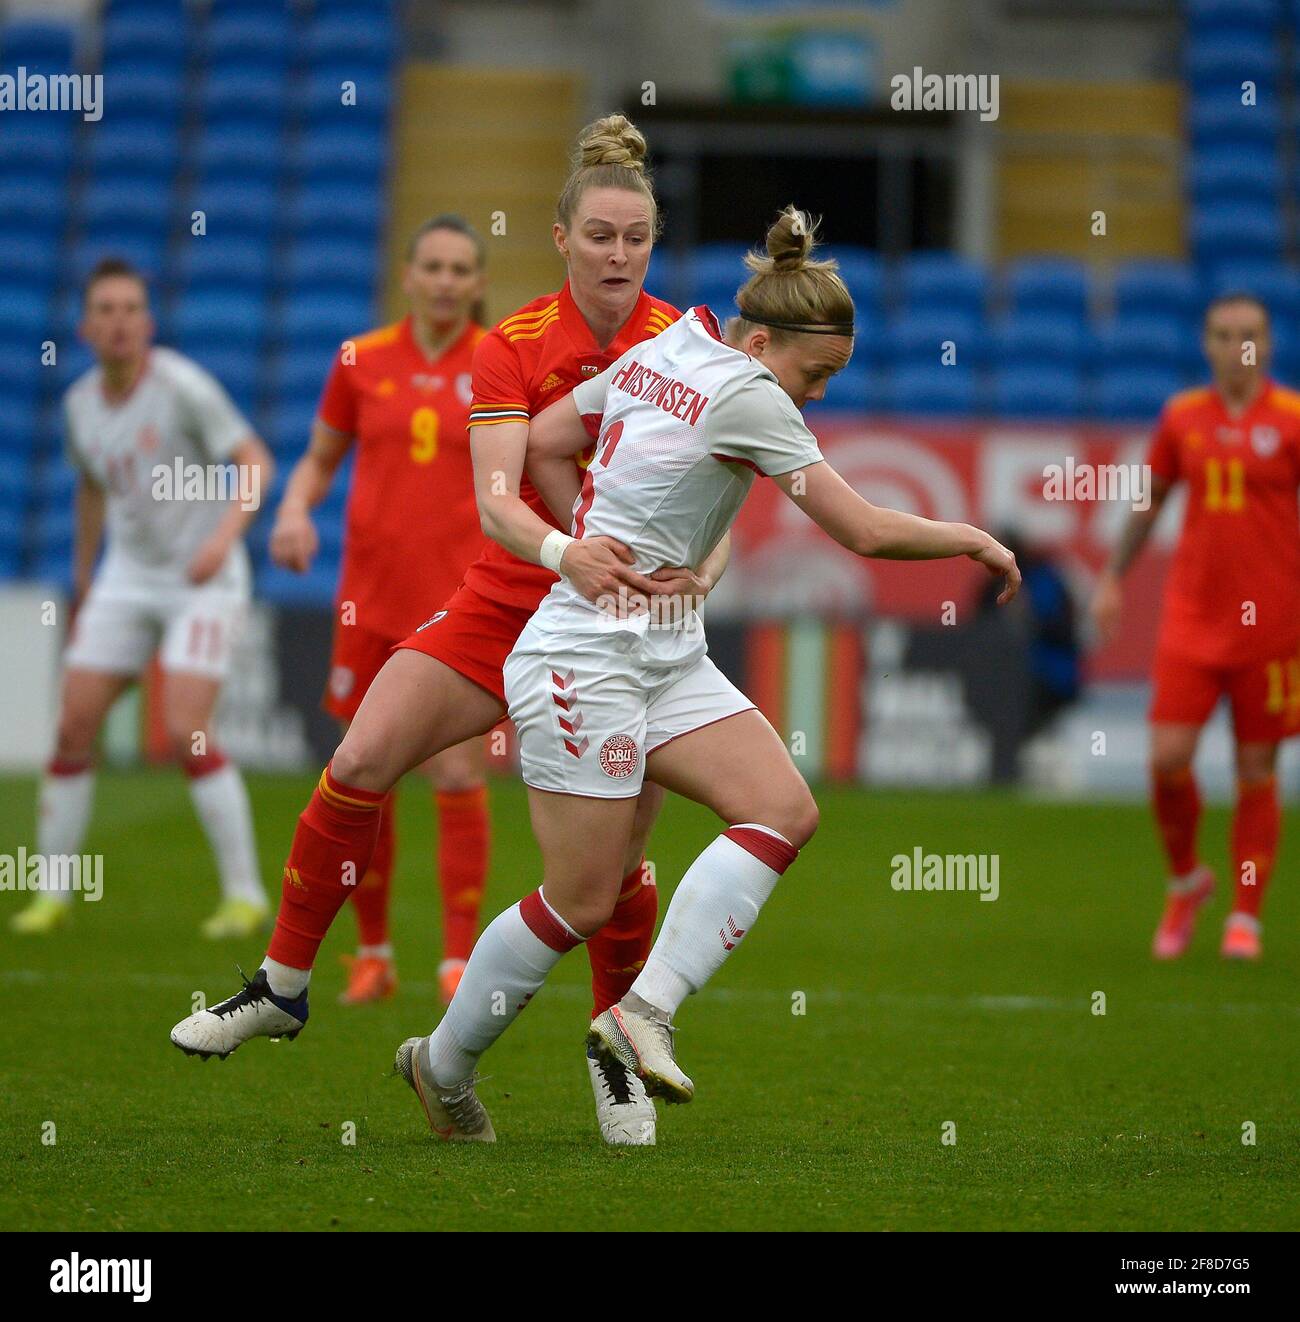 Le pays de Galles accueille le Danemark dans un match de football international de l'UEFA au stade de Cardiff City Stadium : Rhiannon Roberts (rouge) du pays de Galles foules Nanna Christiansen (blanc) du Danemark Credit: Andrew Dowling Banque D'Images